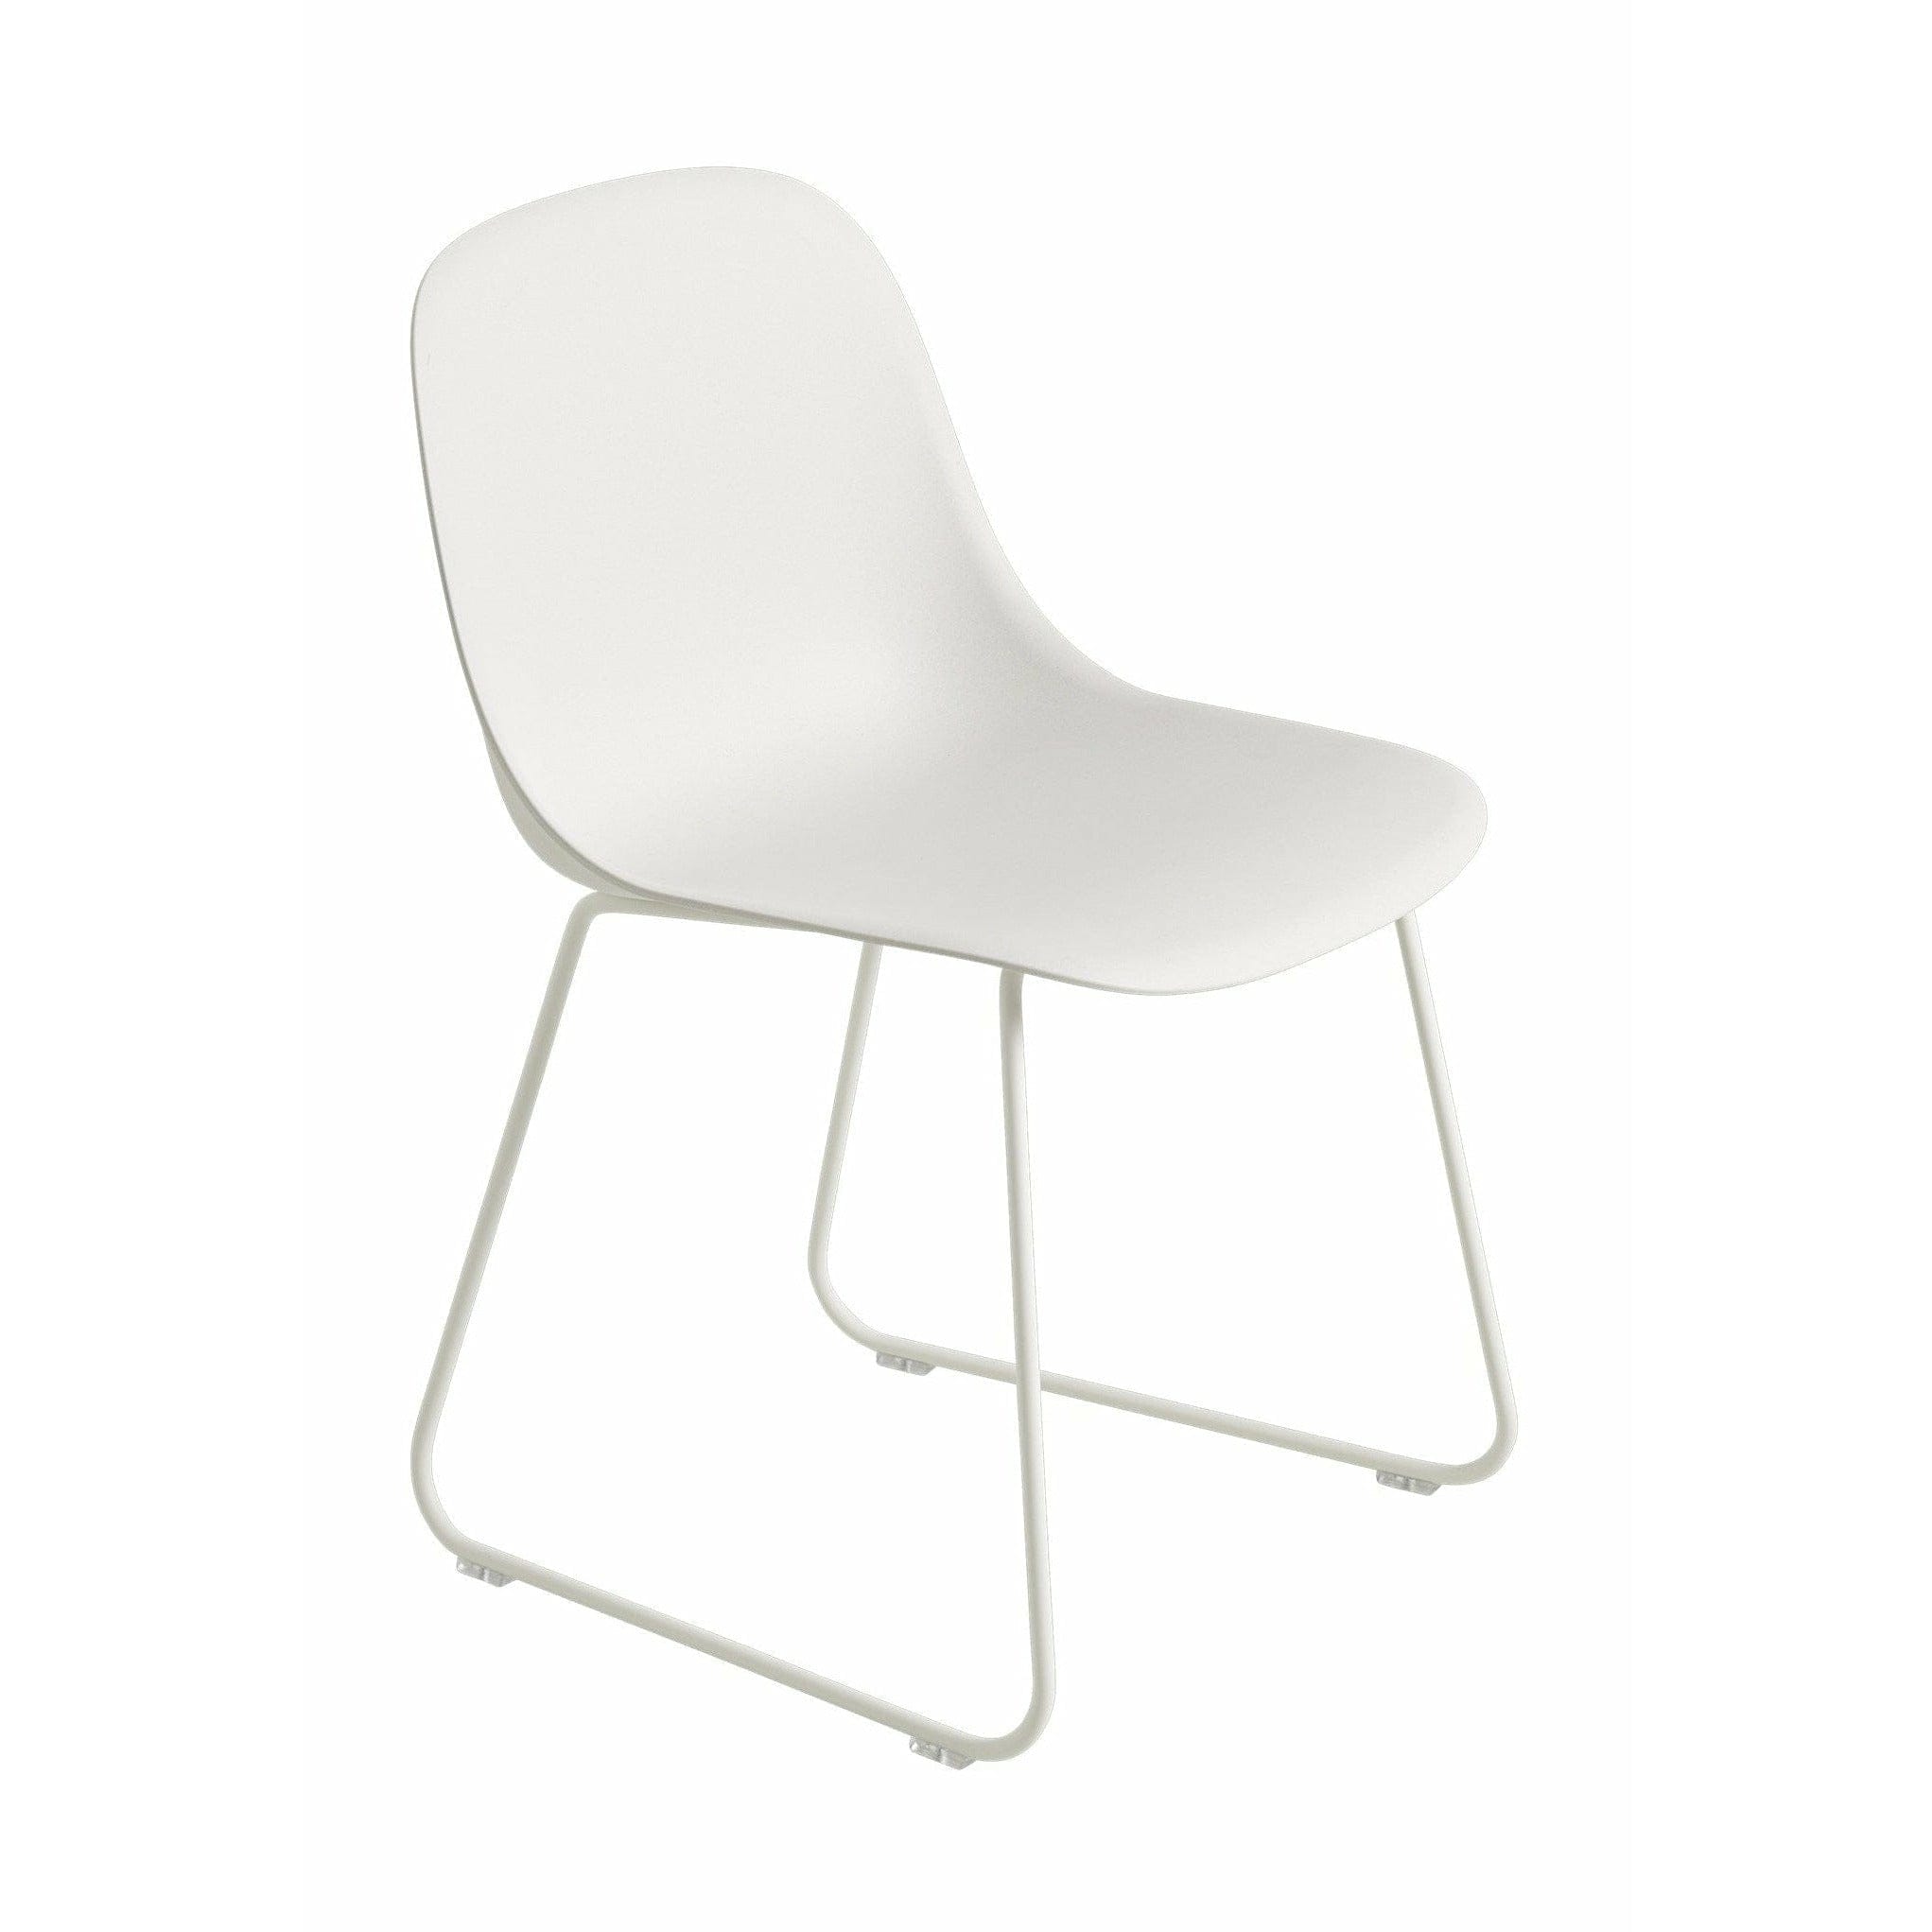 Muuto Kuitupuolen tuoli, joka on valmistettu kierrätetystä muovikelkasta, luonnollinen valkoinen/valkoinen